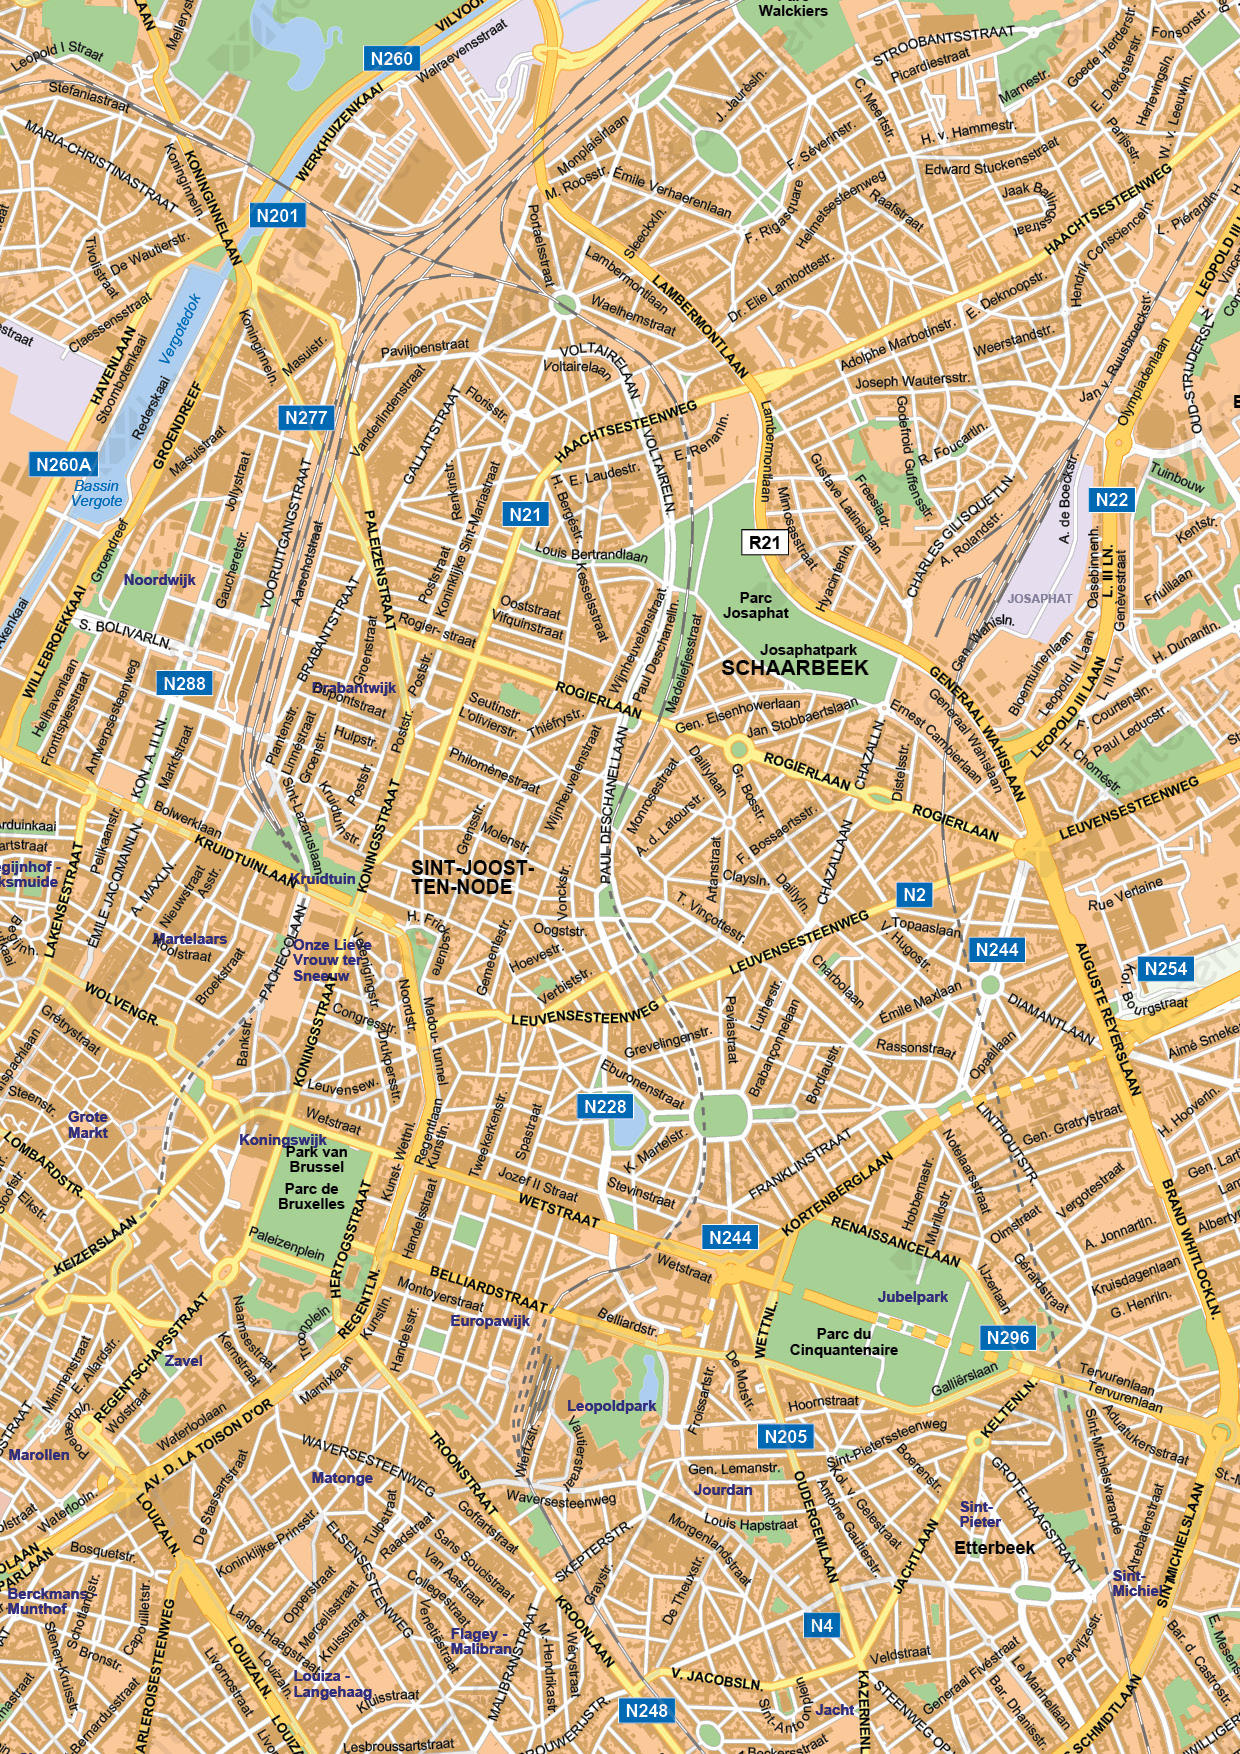 Digitale Kaart Brussel